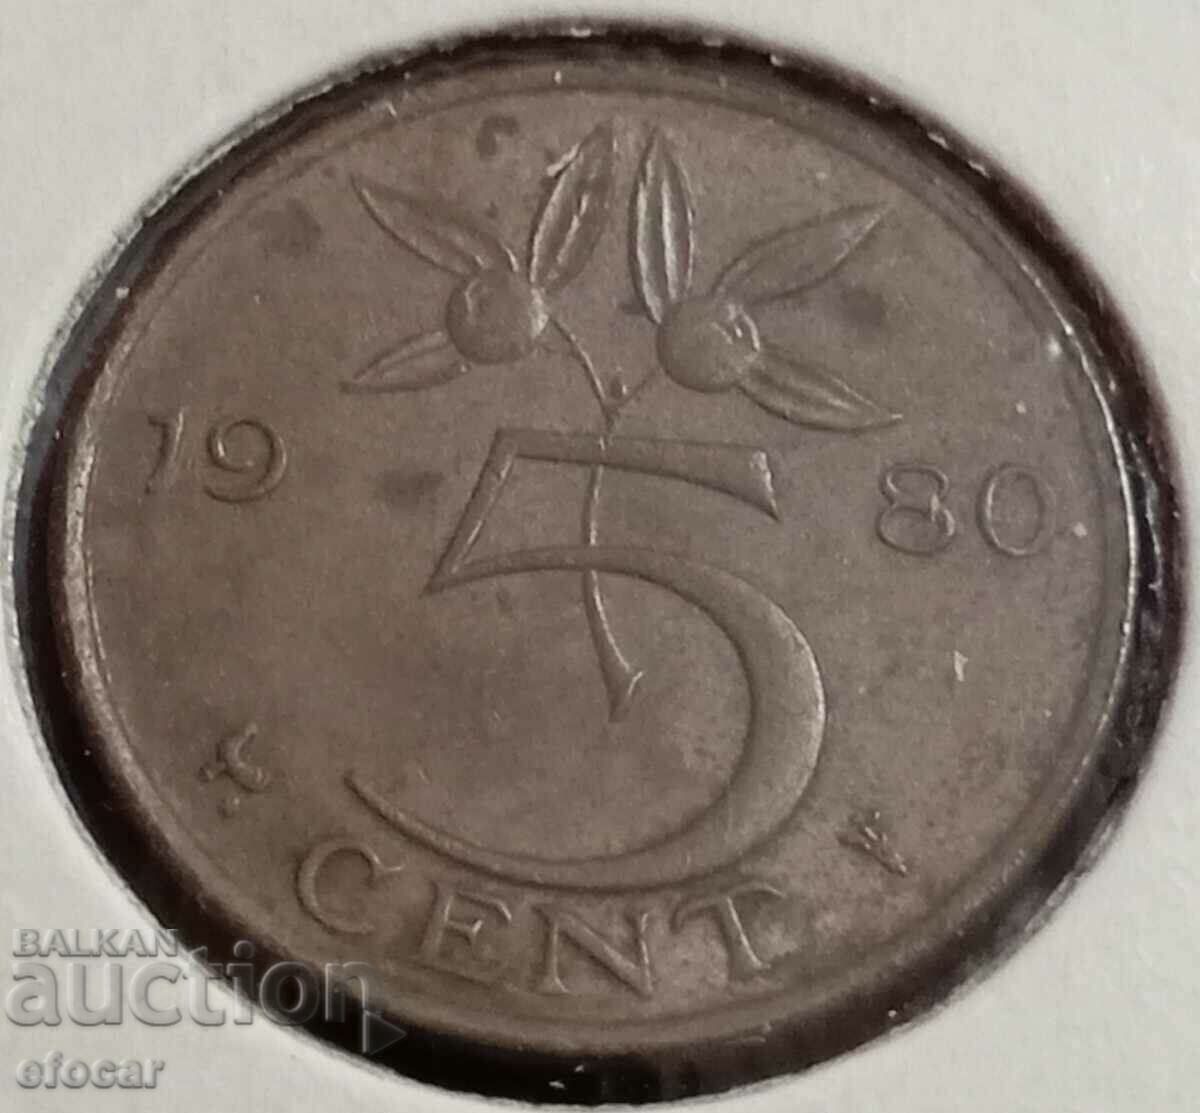 5 cent Ολλανδία 1980